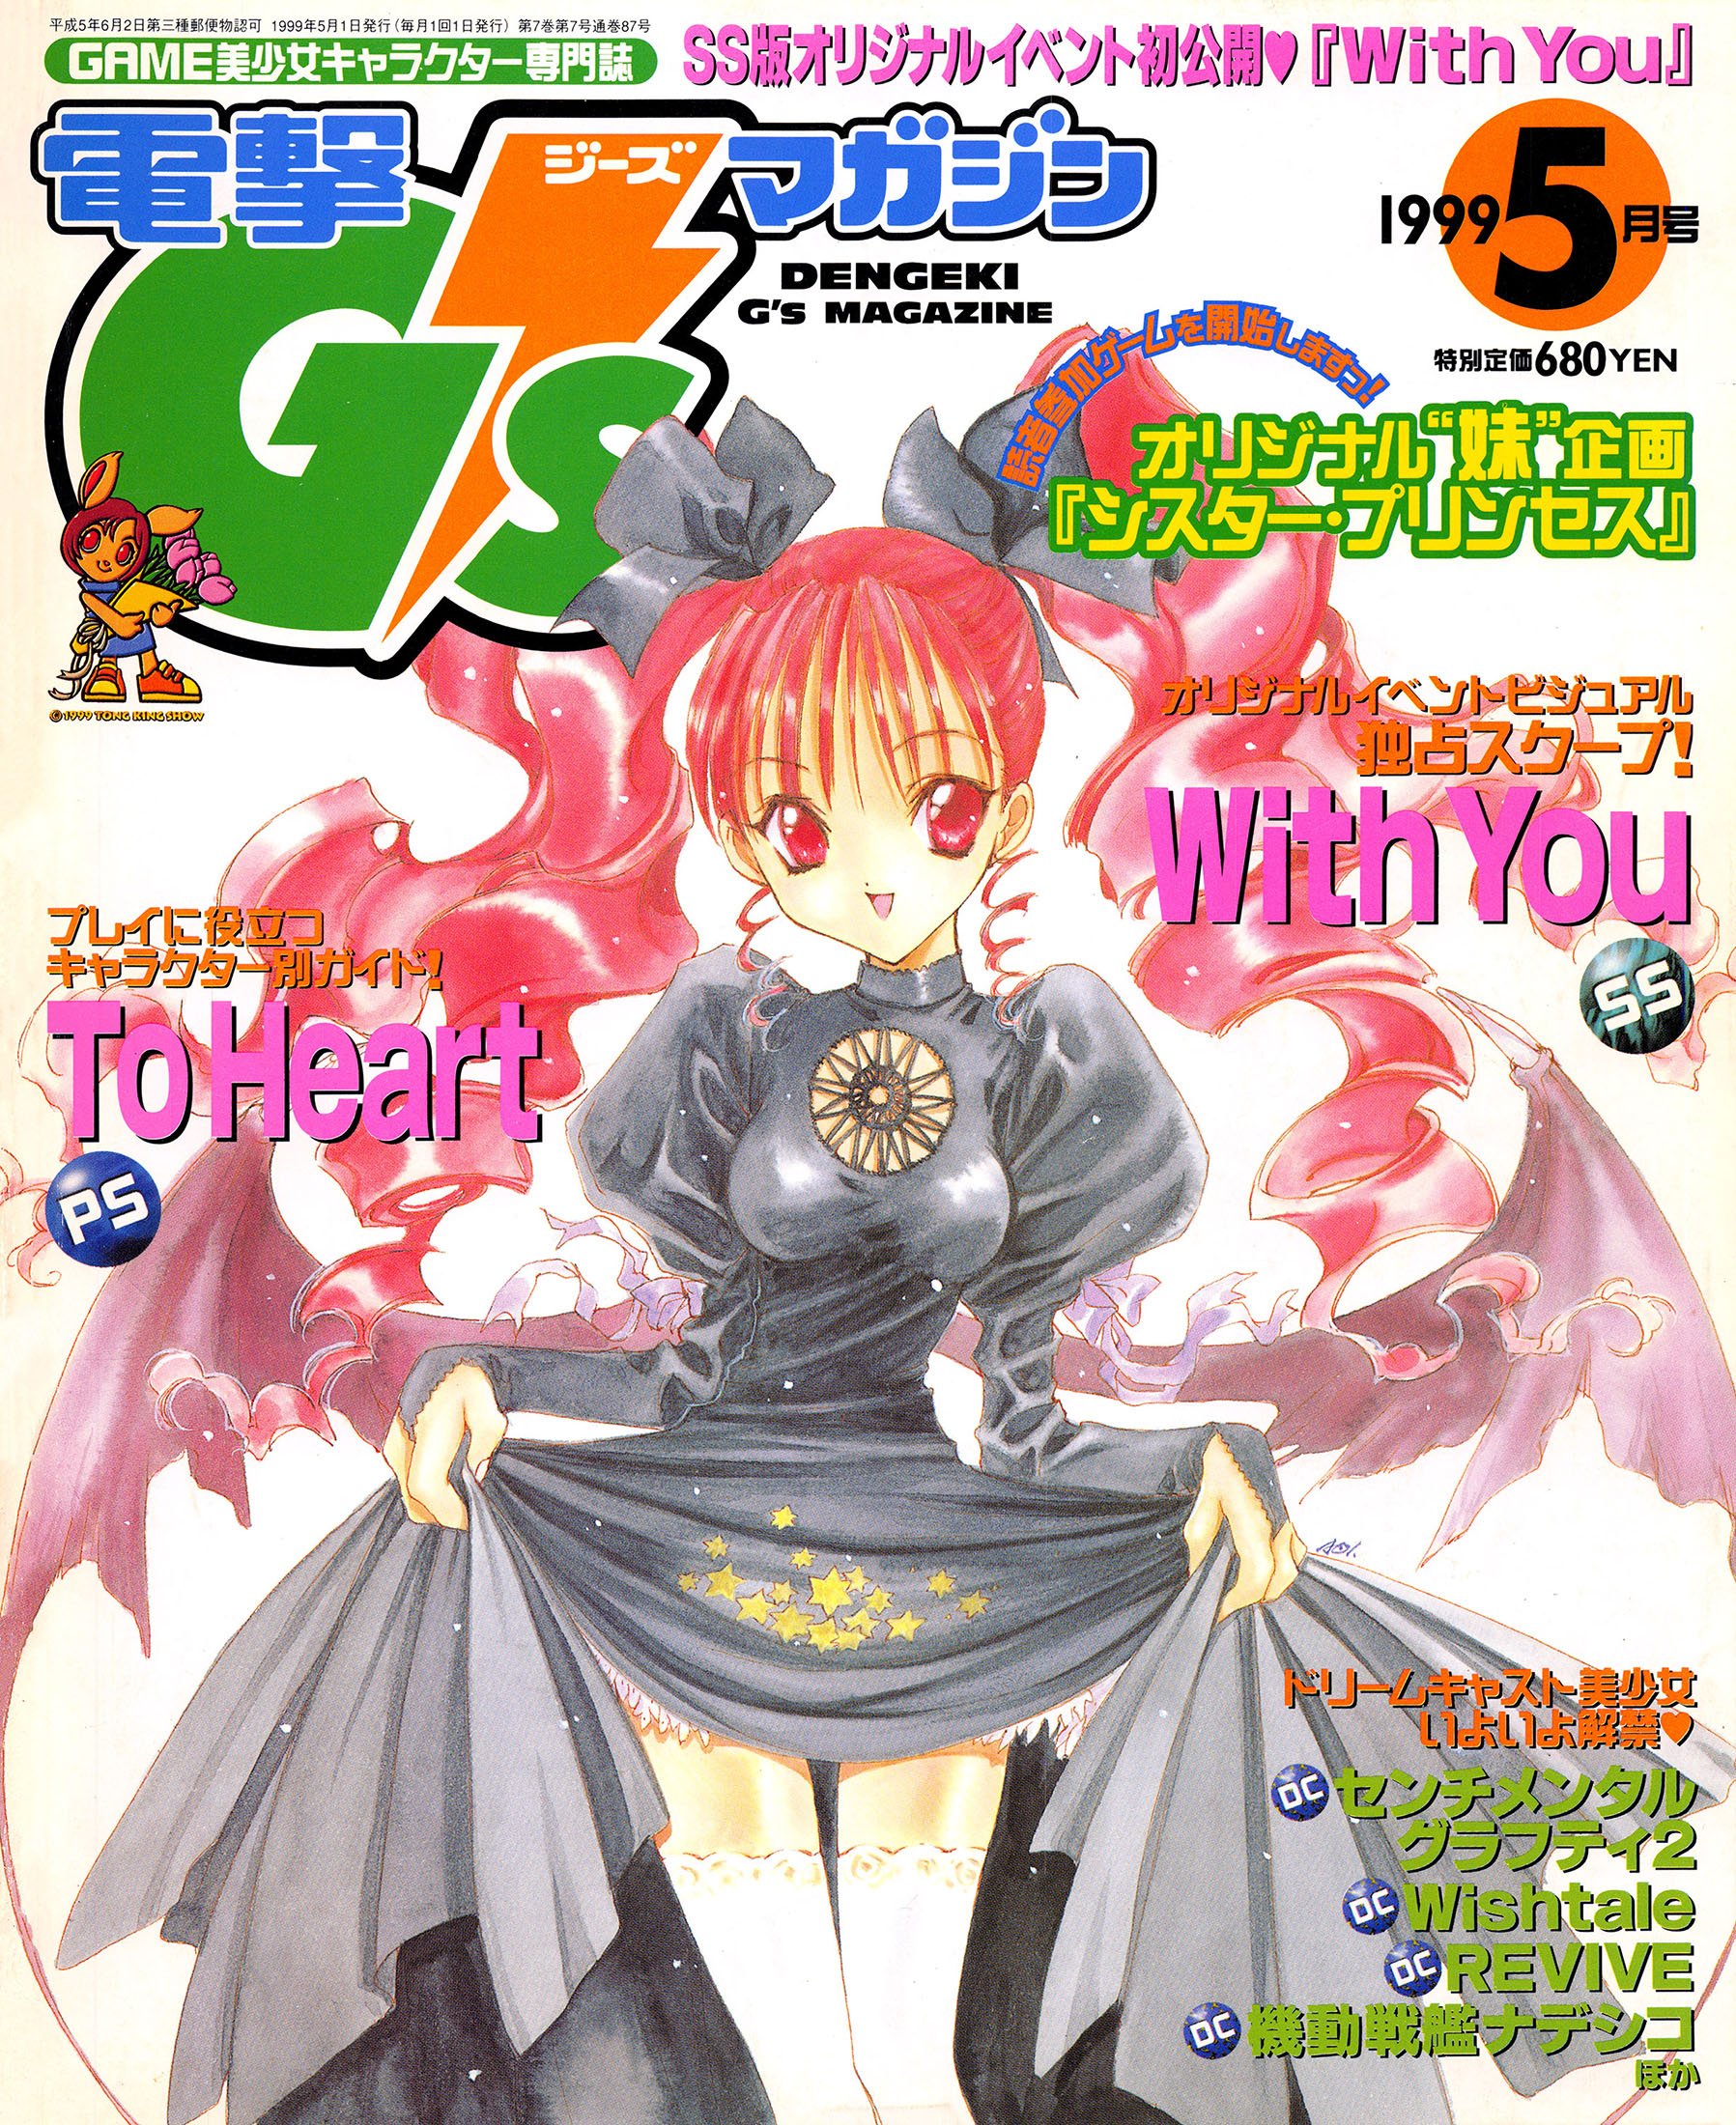 Dengeki G's Magazine Issue 22 (May 1999)